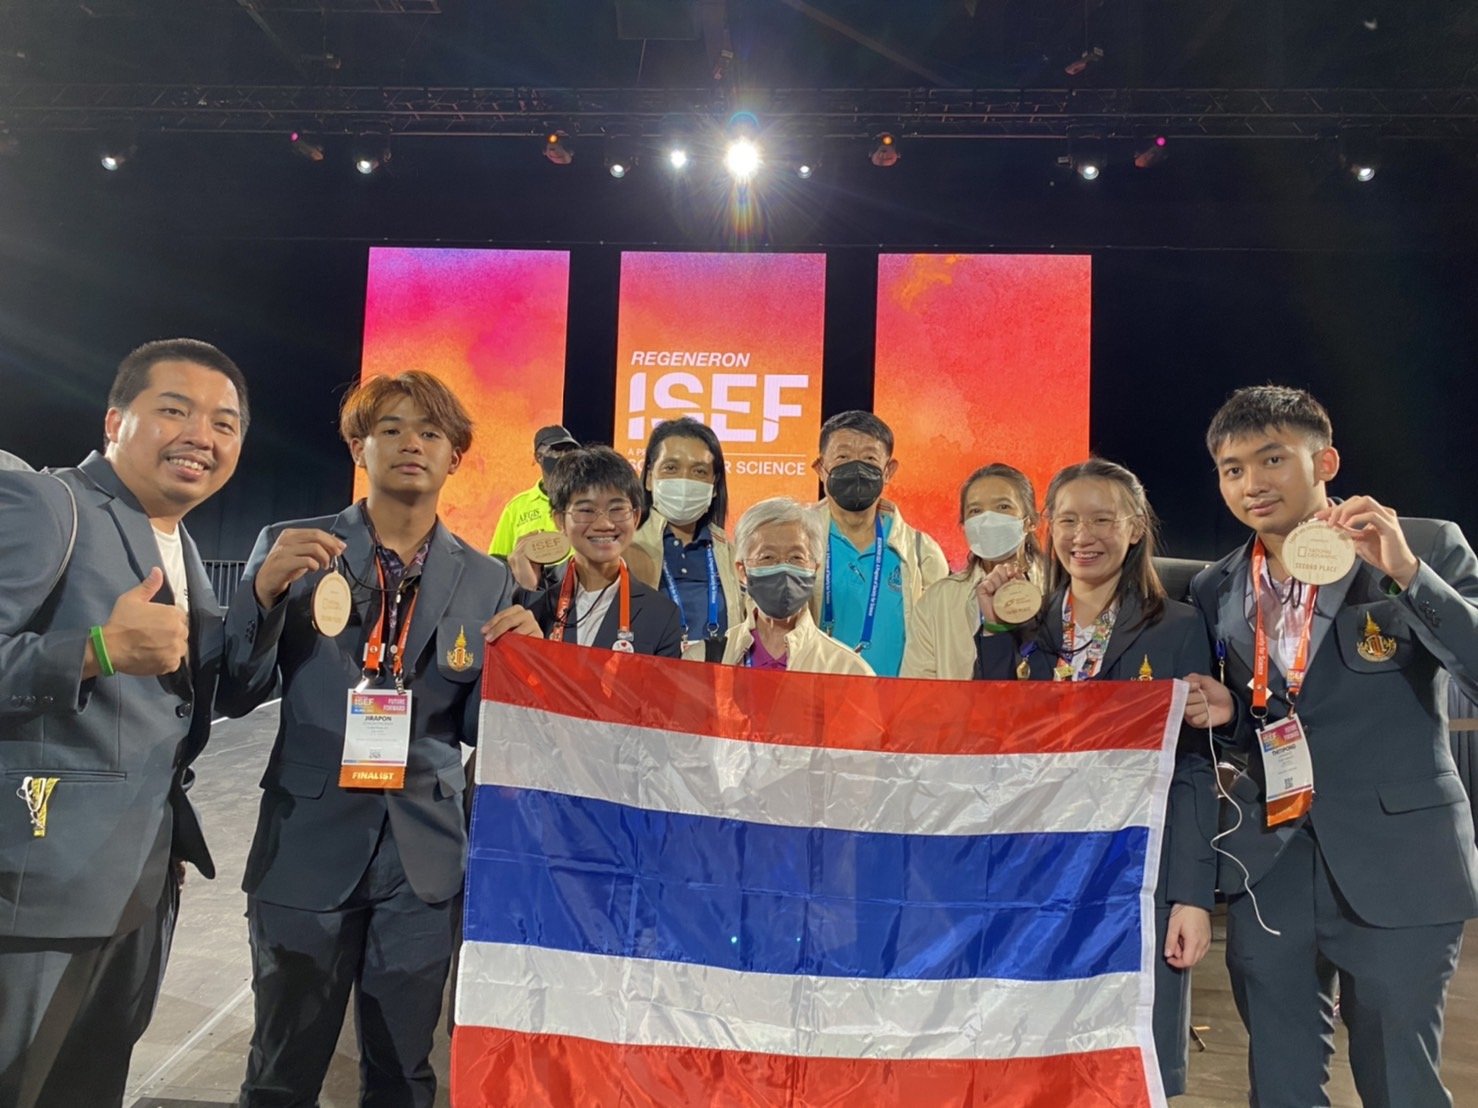 สร้างชื่อในเวทีโลก เด็กไทยคว้าที่ 1 การแข่งขันโครงงานวิทยาศาสตร์และวิศวกรรมสำหรับเยาวชน REGENERON ISEF 2022